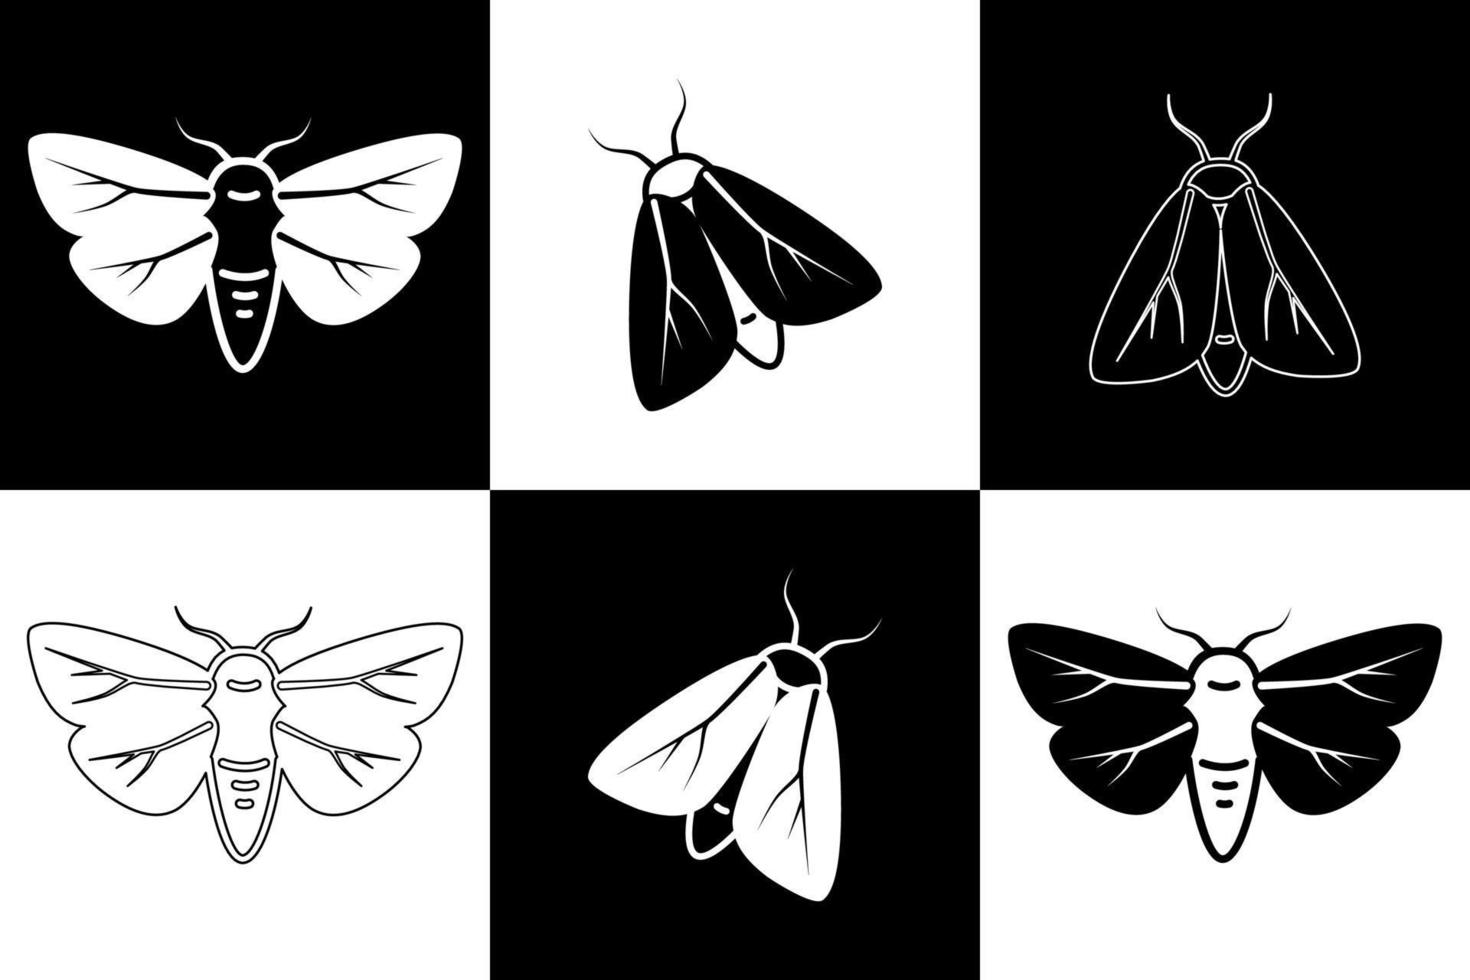 nero e bianca falene. vettore illustrazione di insetti. lineare disegno di farfalle.